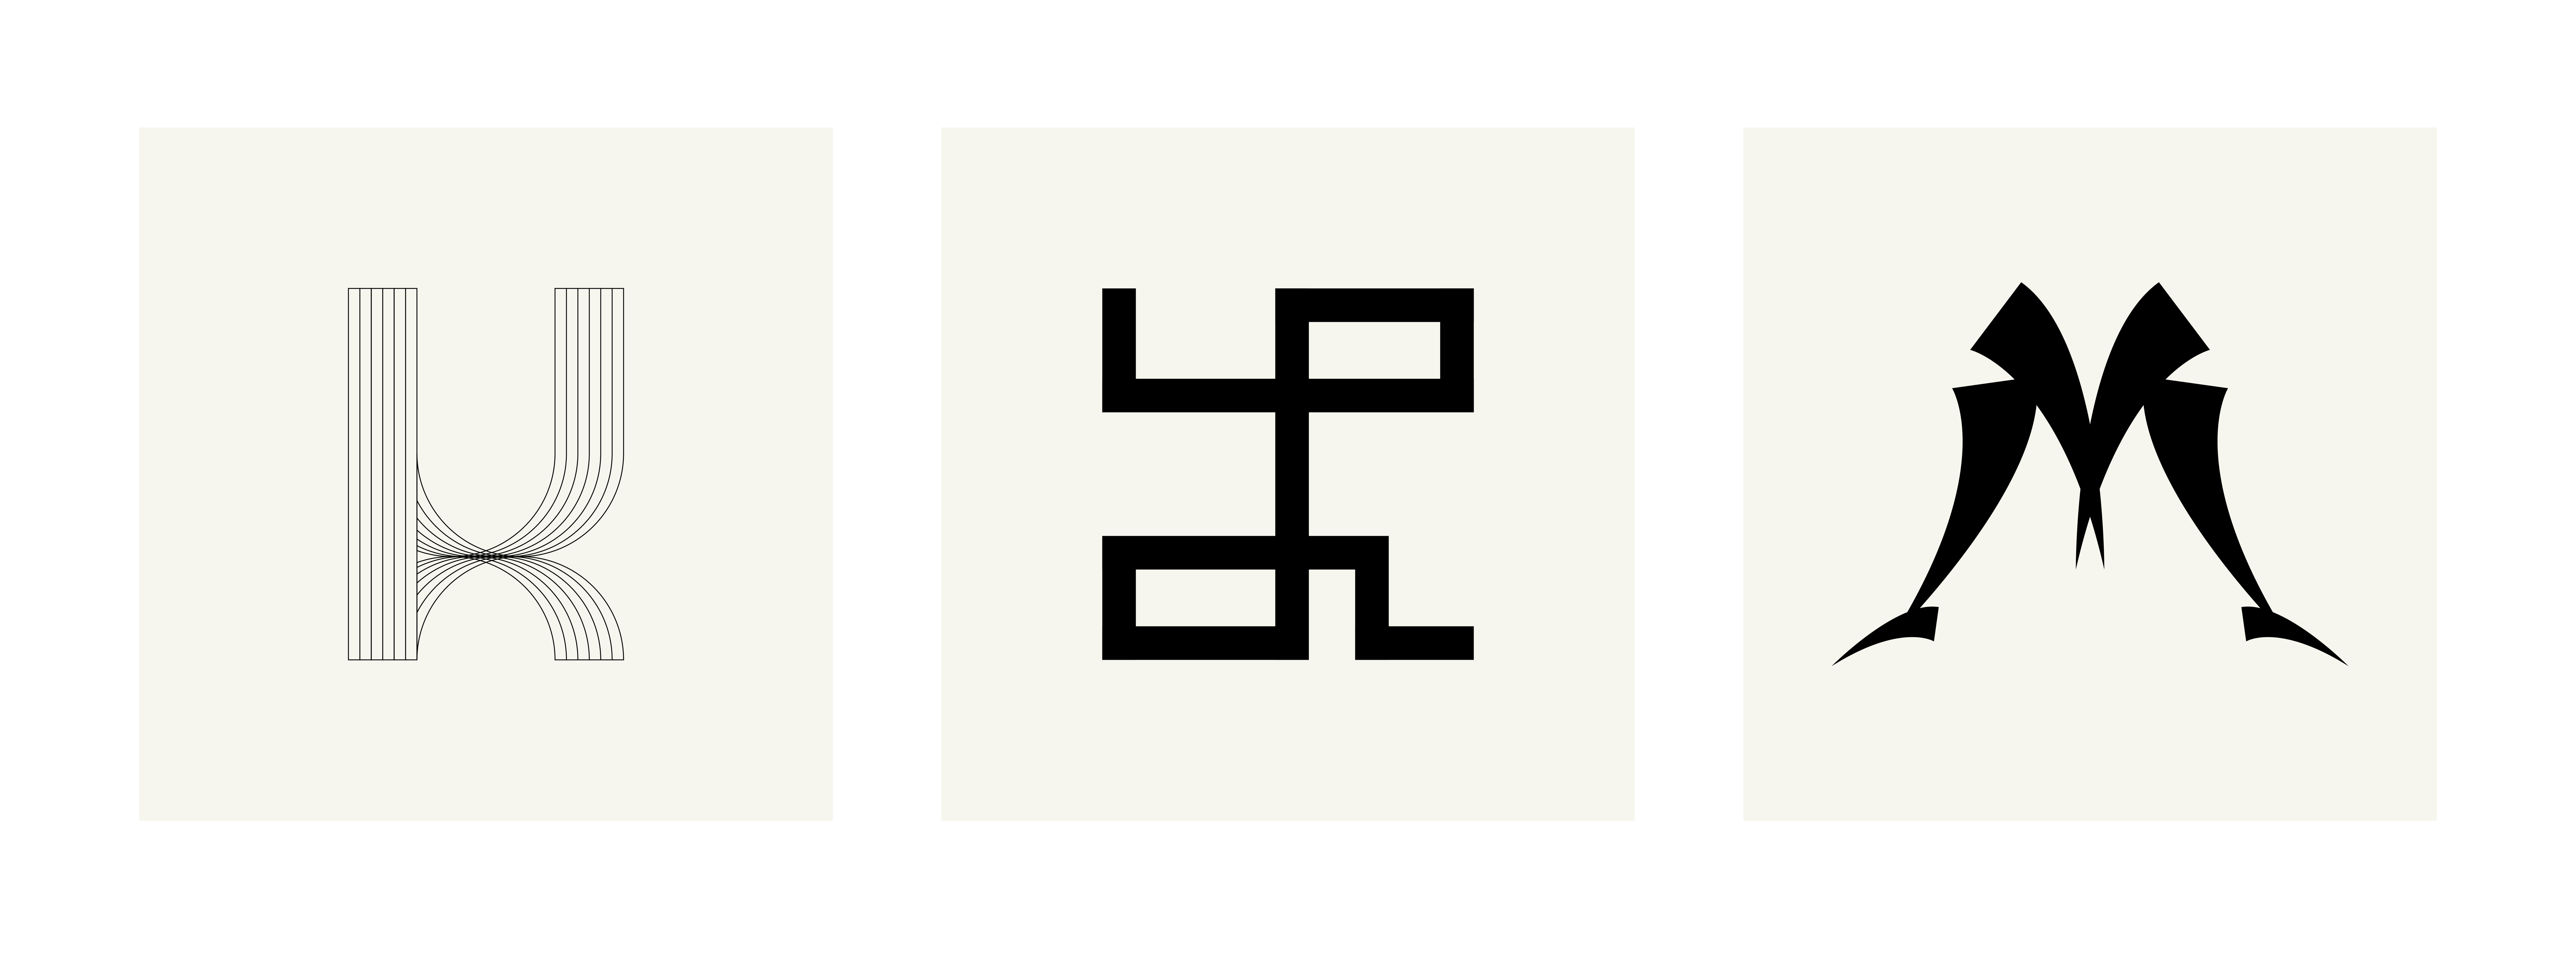 julie-pirovani-typographie-abecedaire-libre-planche-KLM